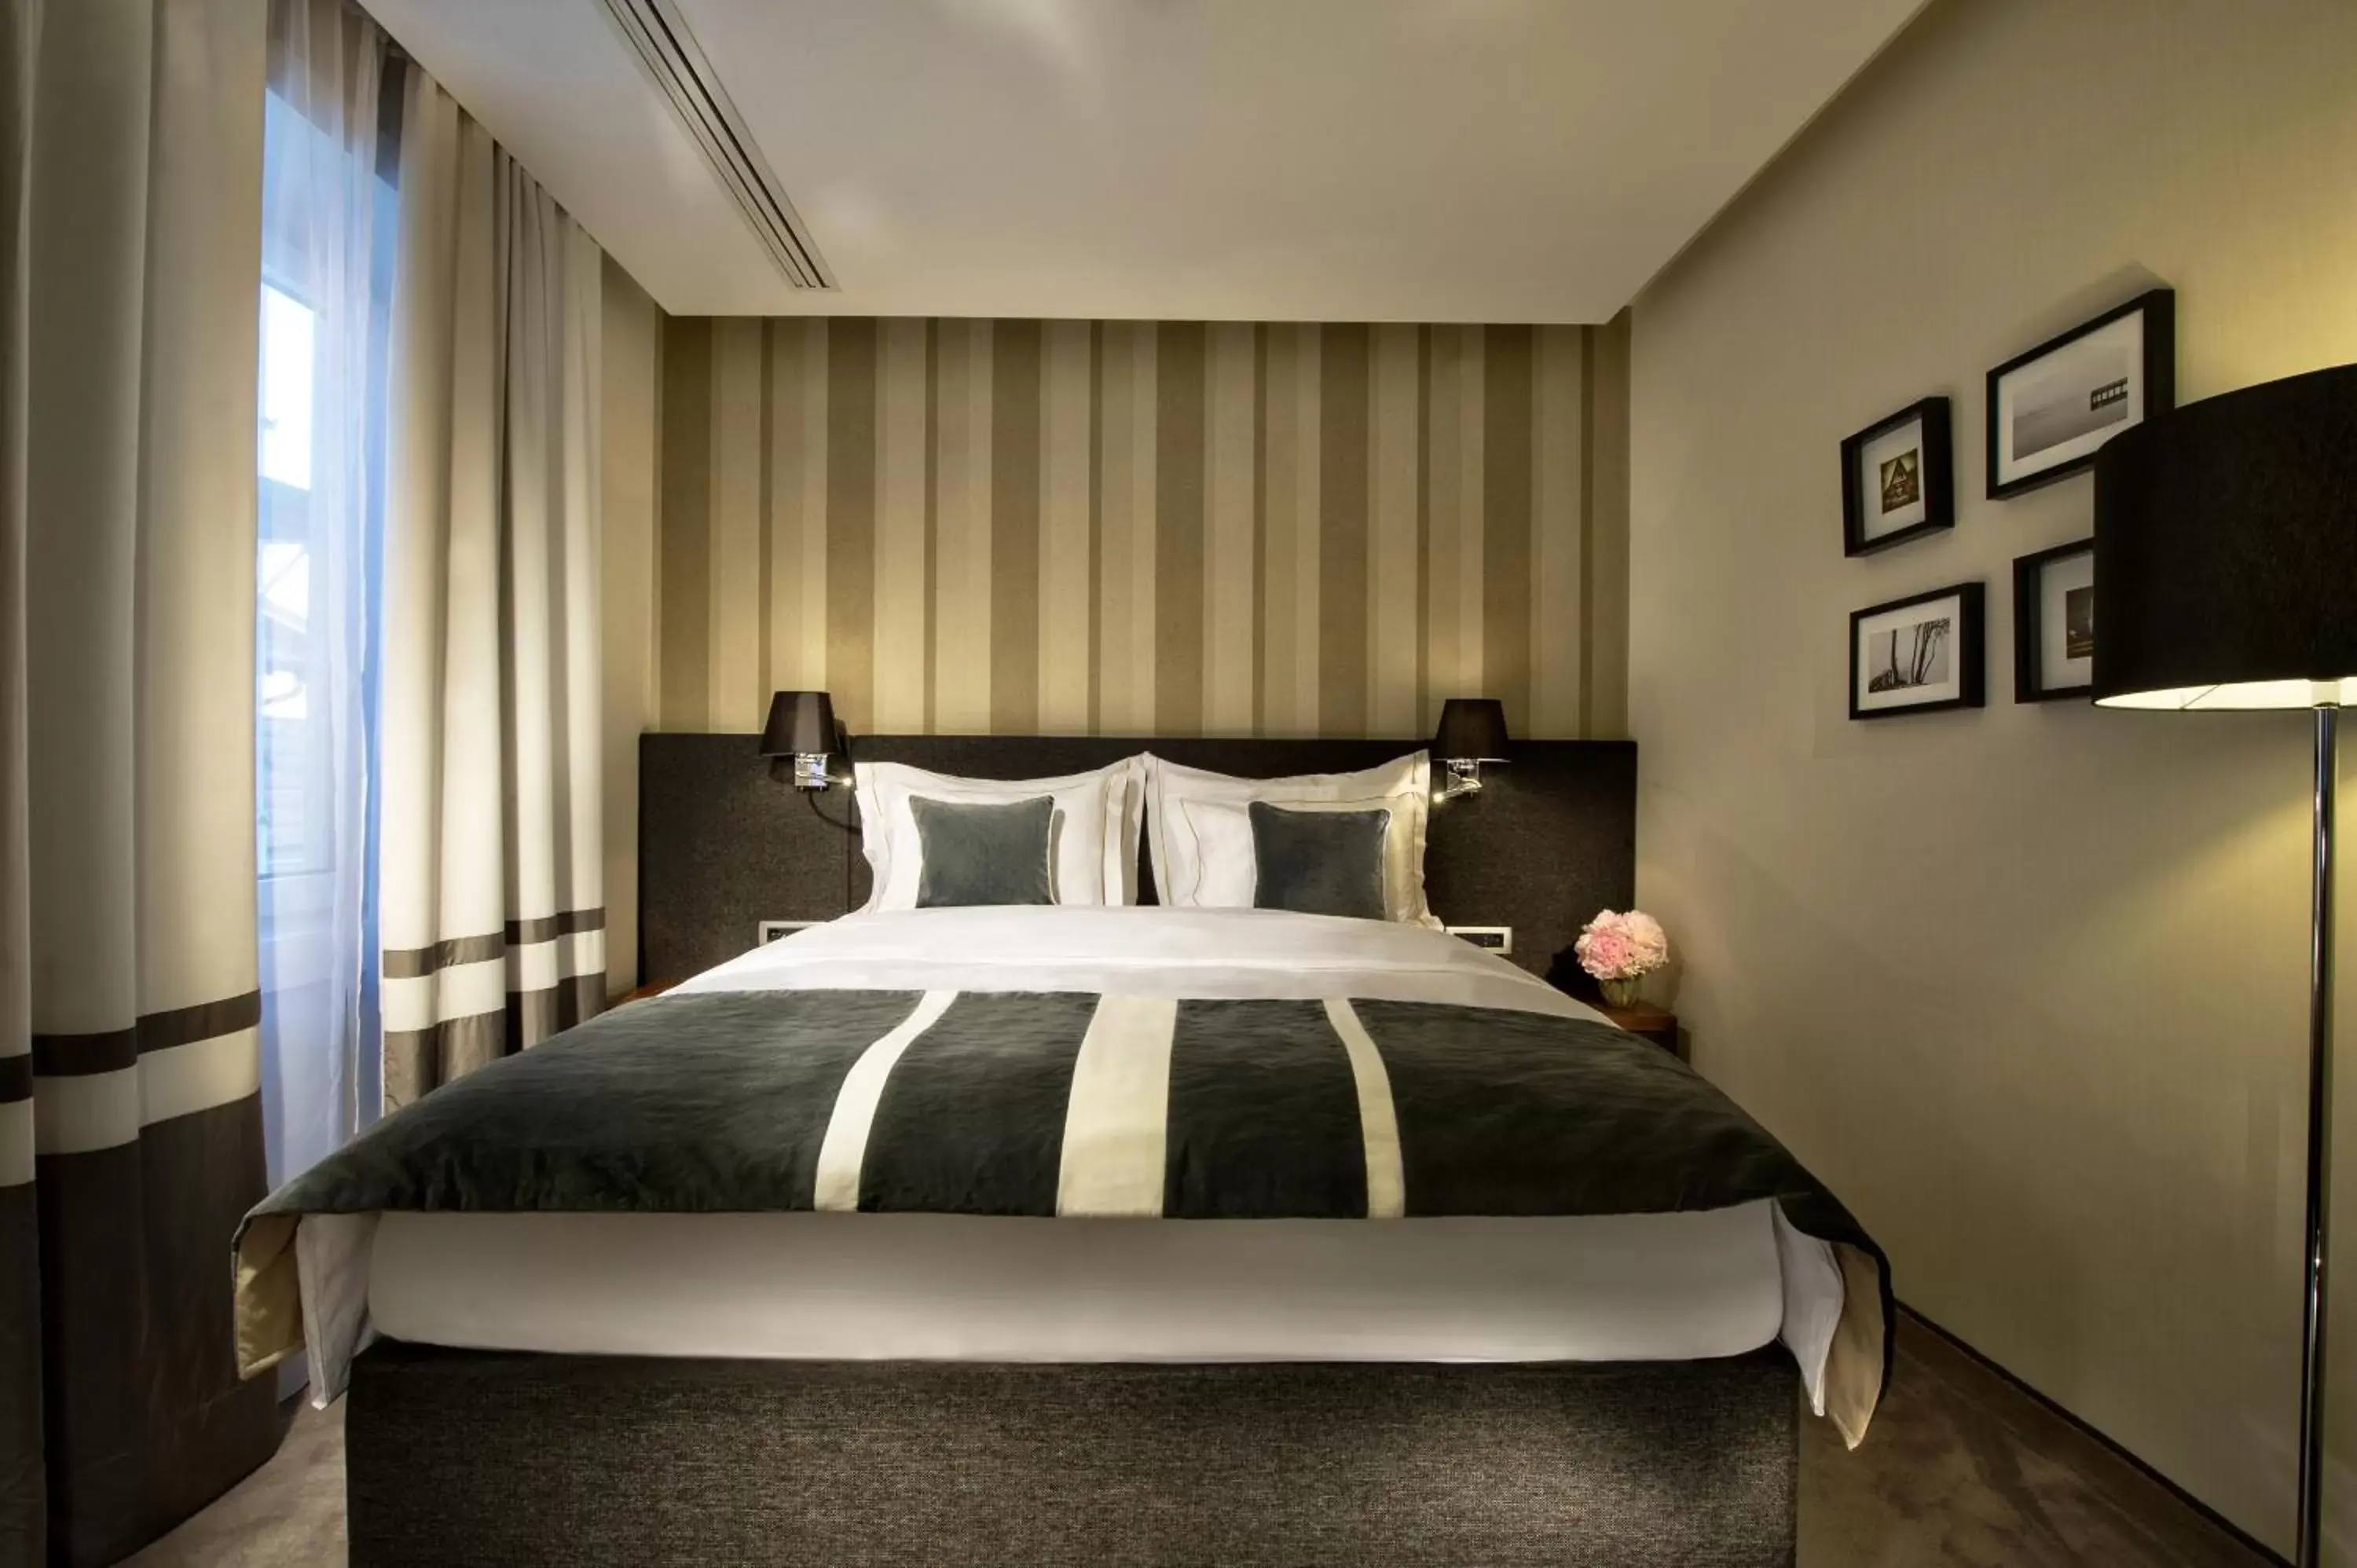 Bed in Best Western Premier Hotel Slon